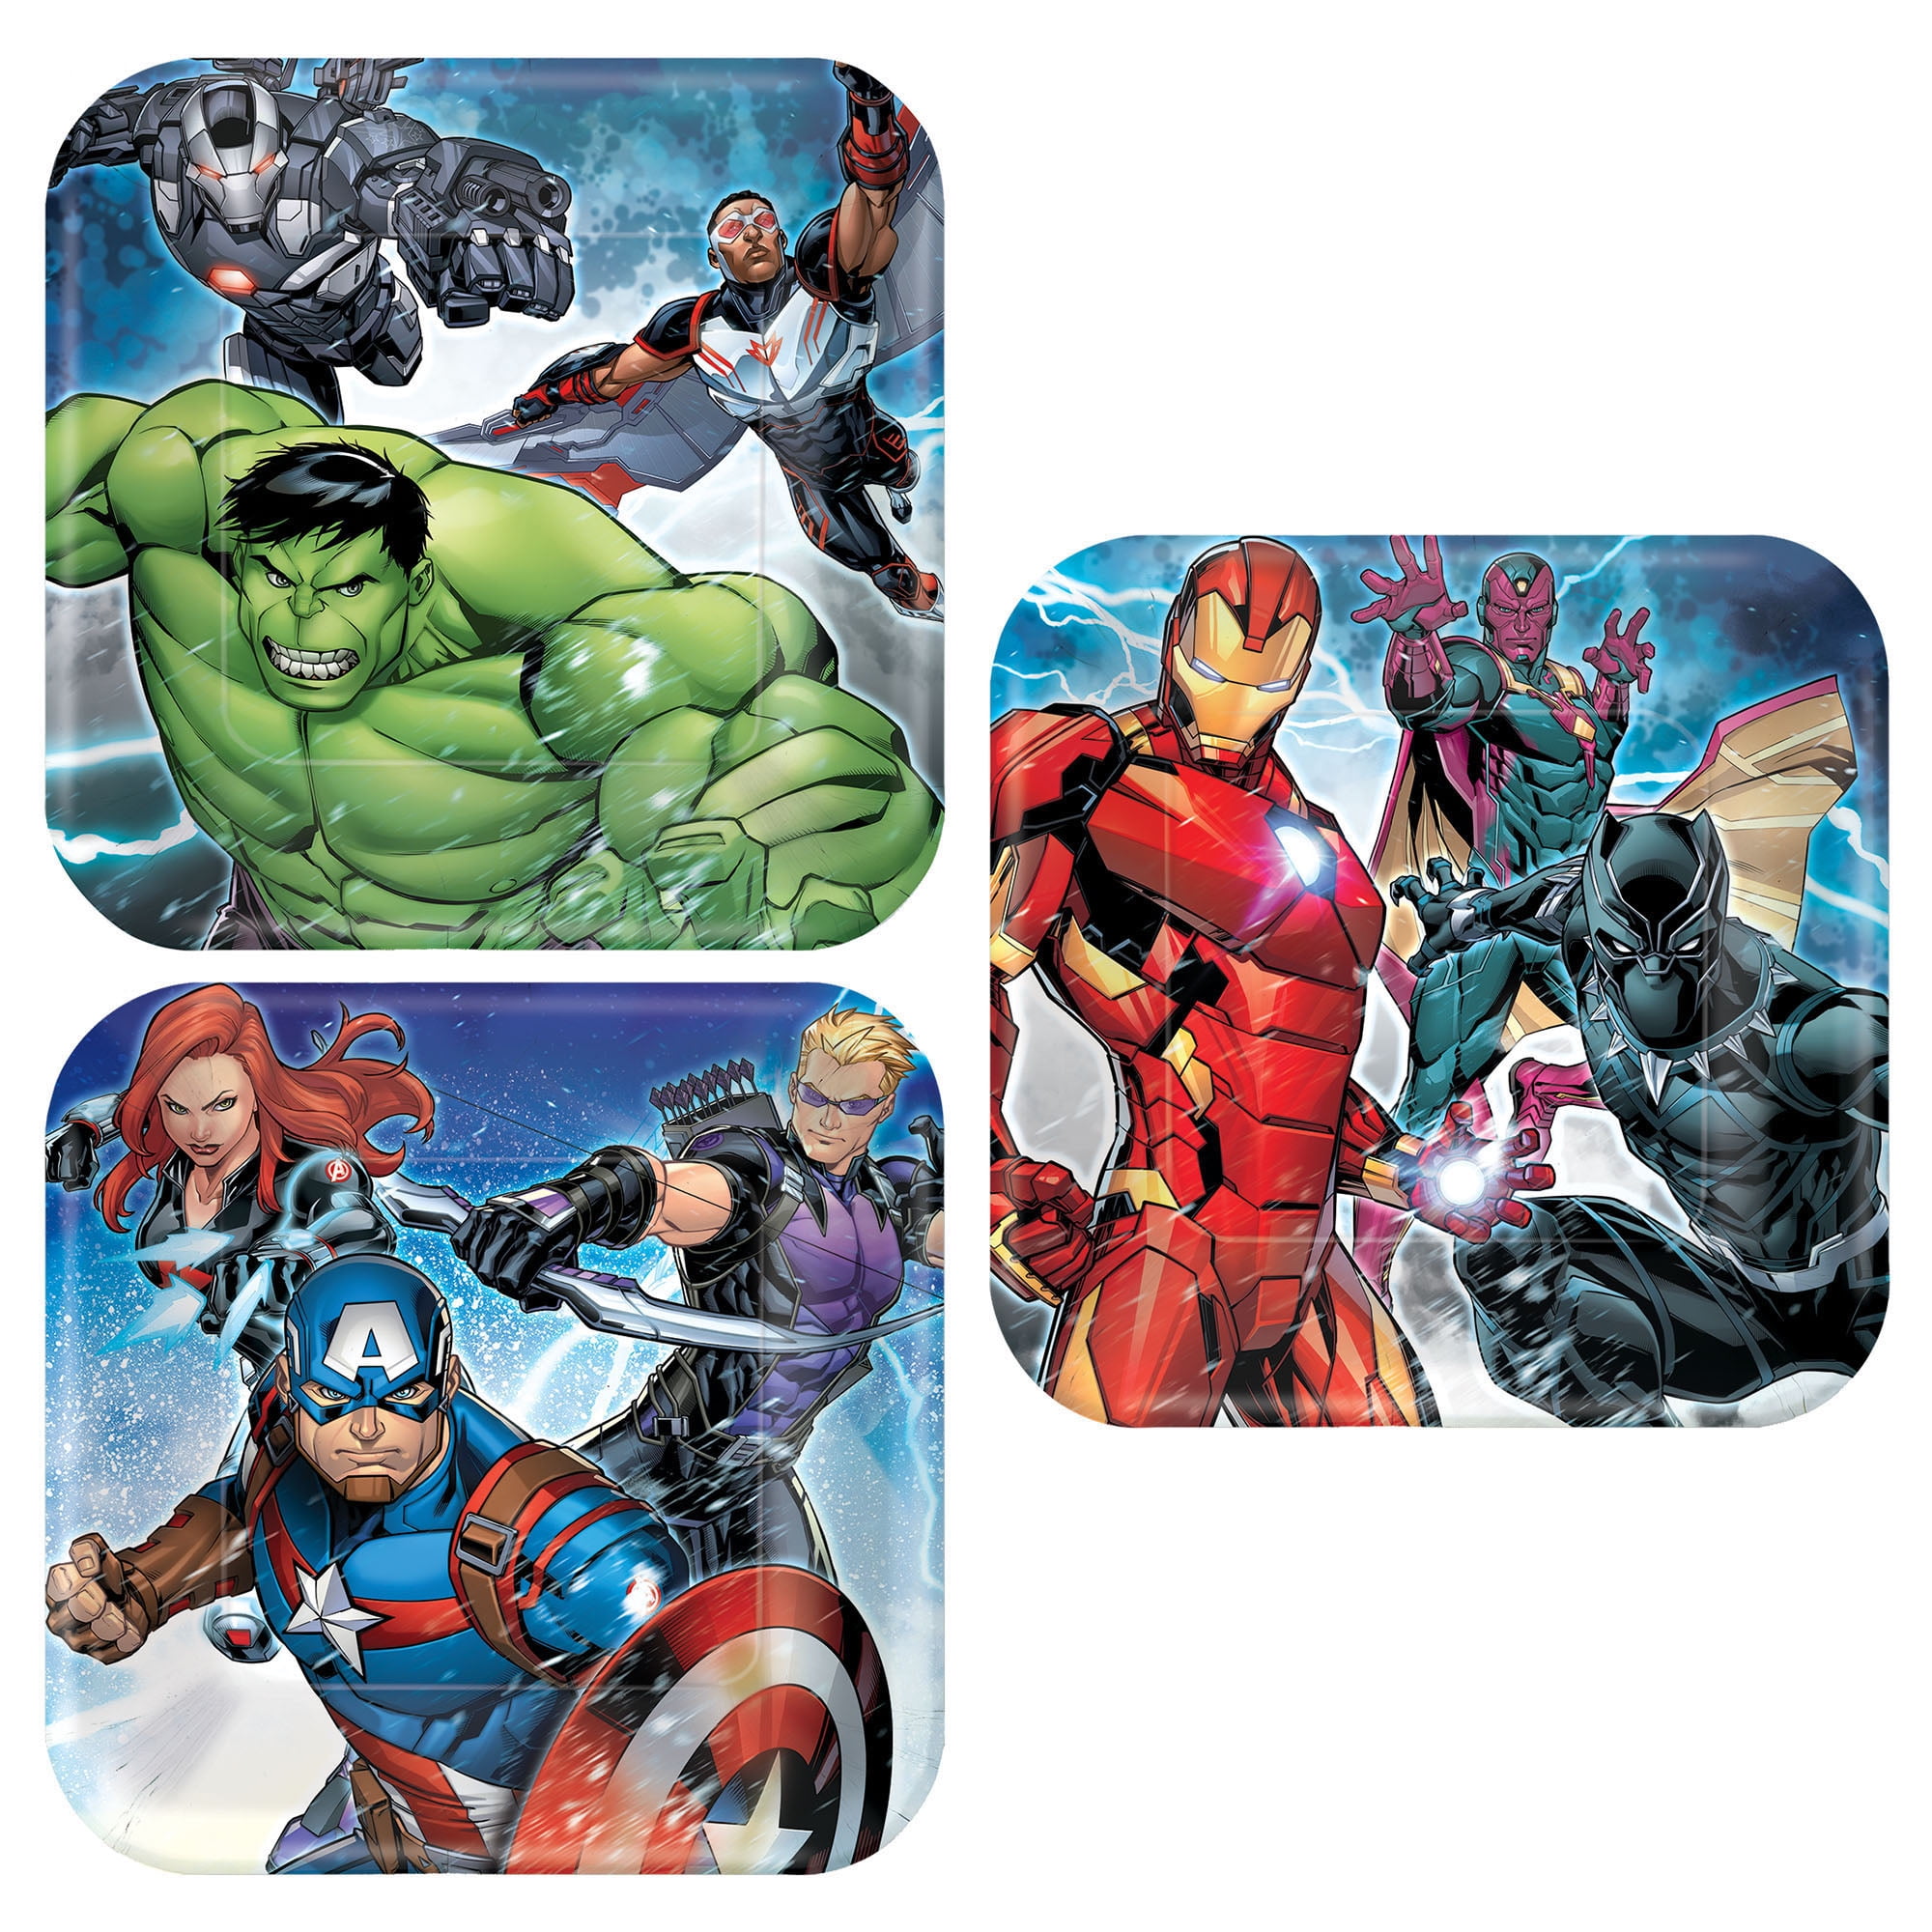 Avengers Pop Comic Square Paper Party Plates x 4 